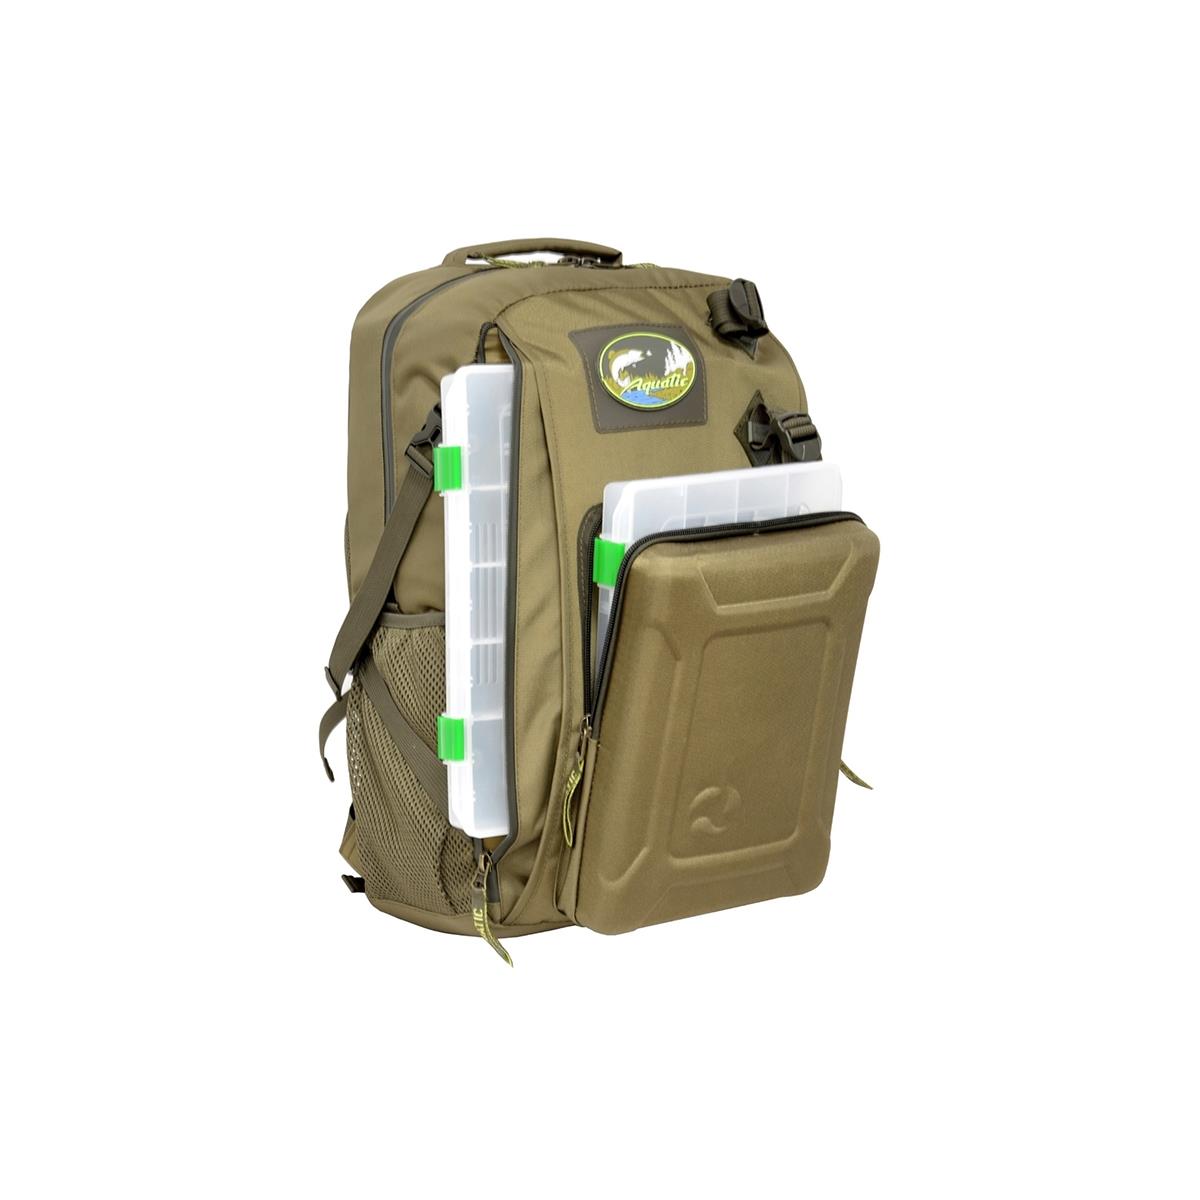 Рюкзак рыболовный с коробками FisherBox РК-02 AQUATIC рюкзак отдел на молнии 2 наружных кармана зелёный